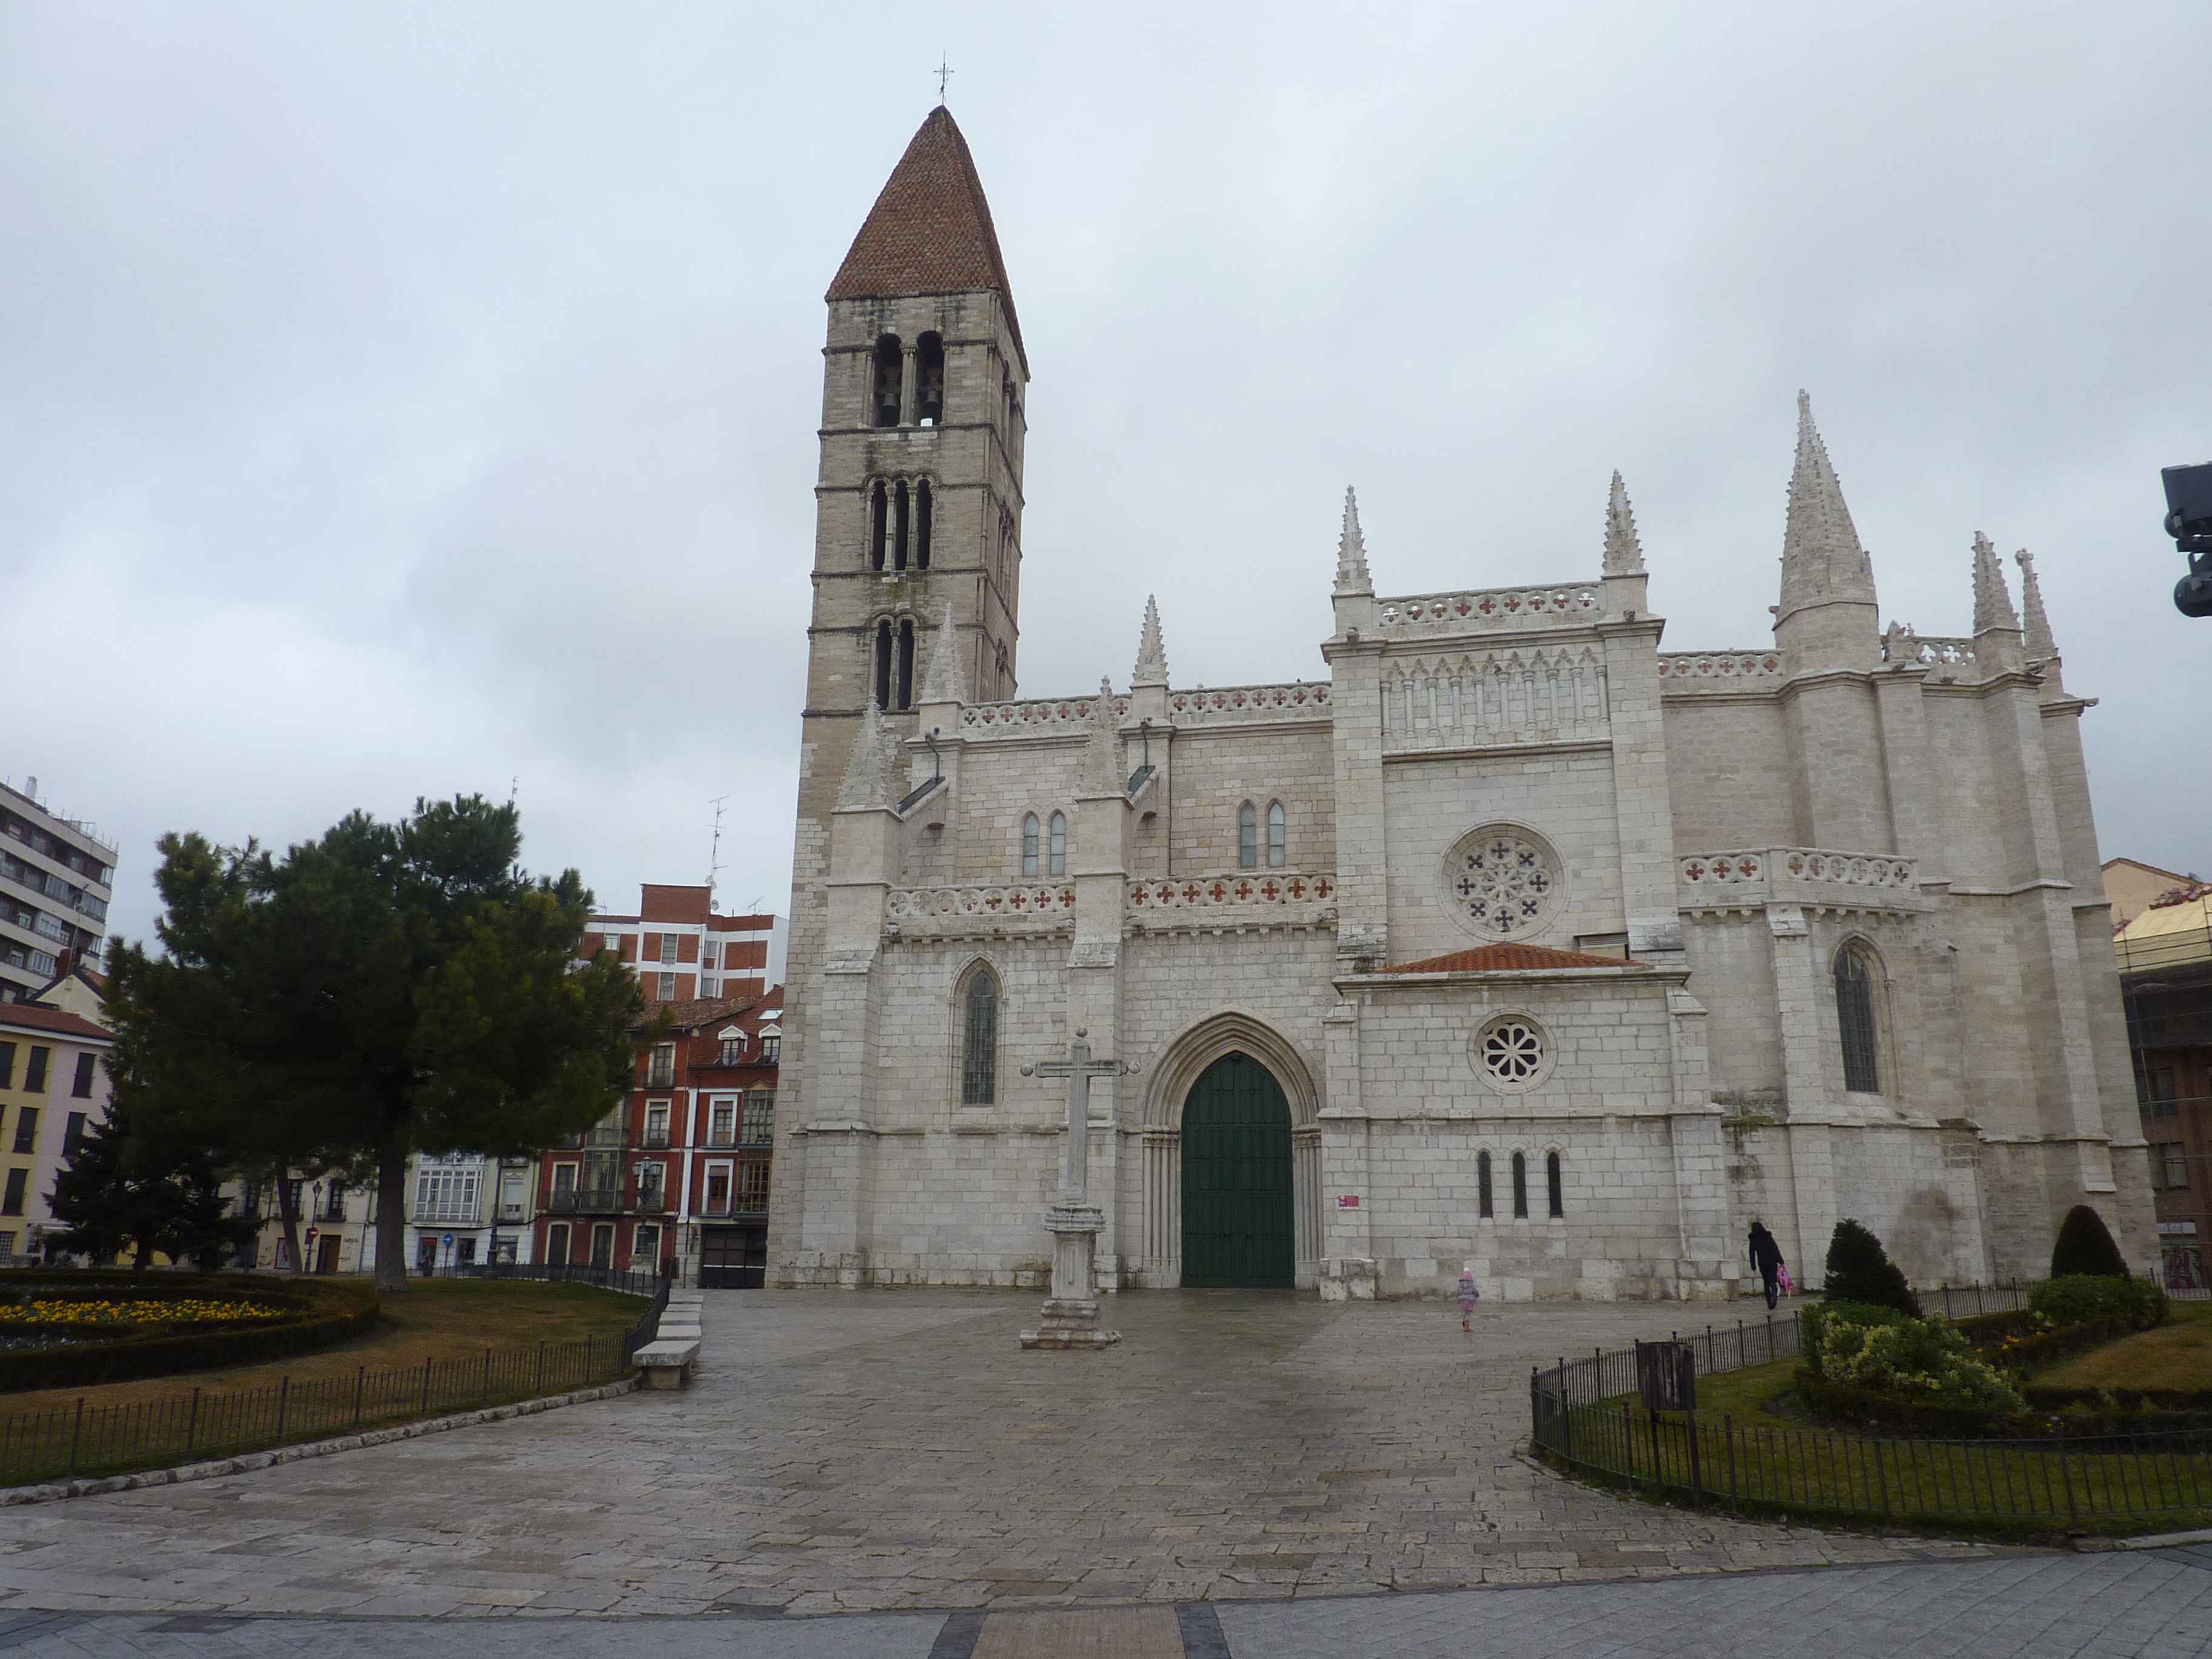 Eglise Catholique Sur La Place De Portugalete A Cote De La Cathedrale De Valladolid en Images